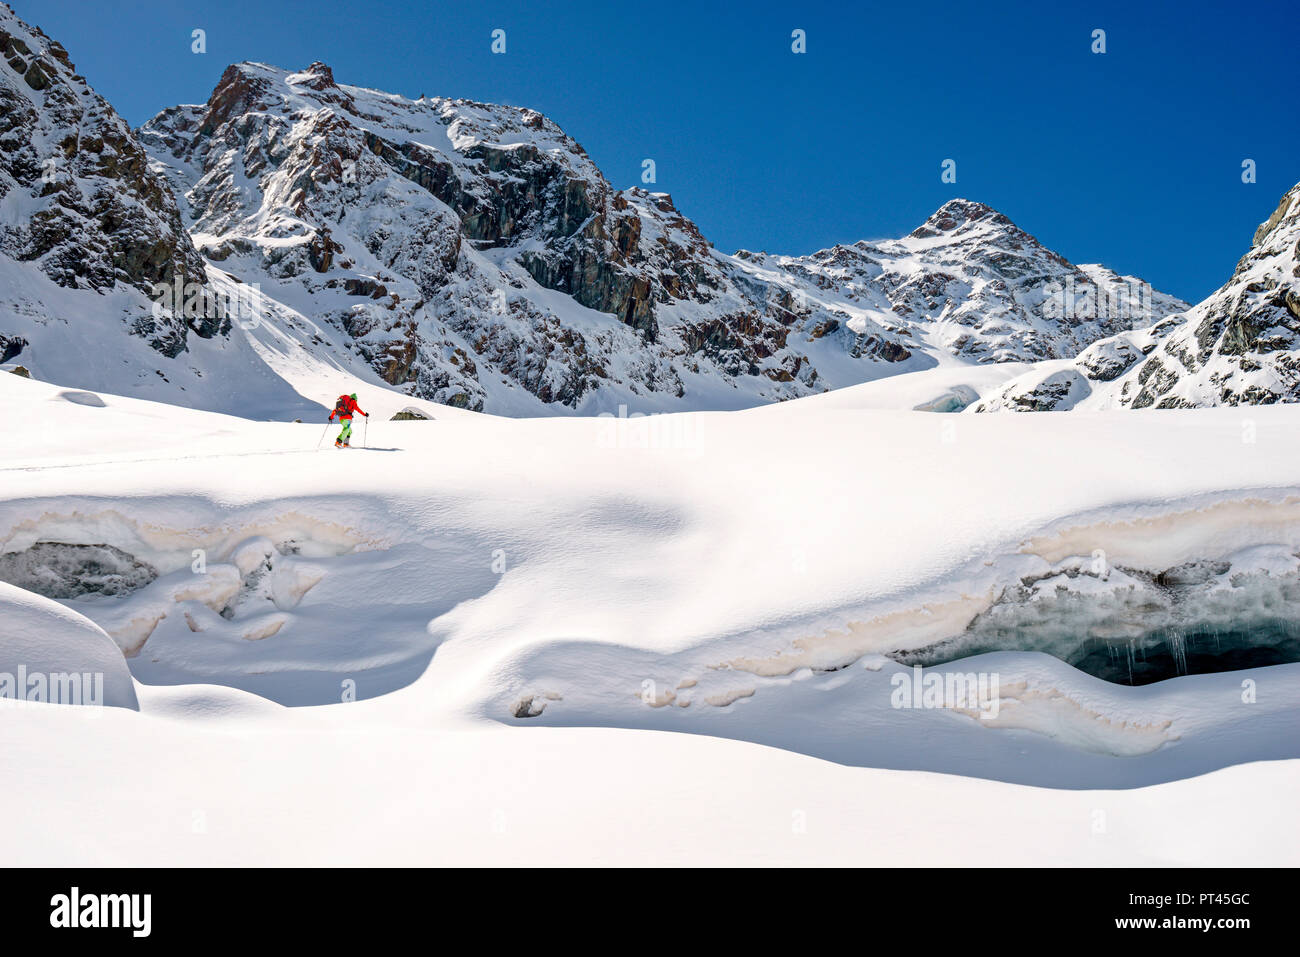 Skitouring to Mount Disgrazia, Ventina Glacier, Chiareggio, Province of Sondrio, Lombardy, Italy Stock Photo